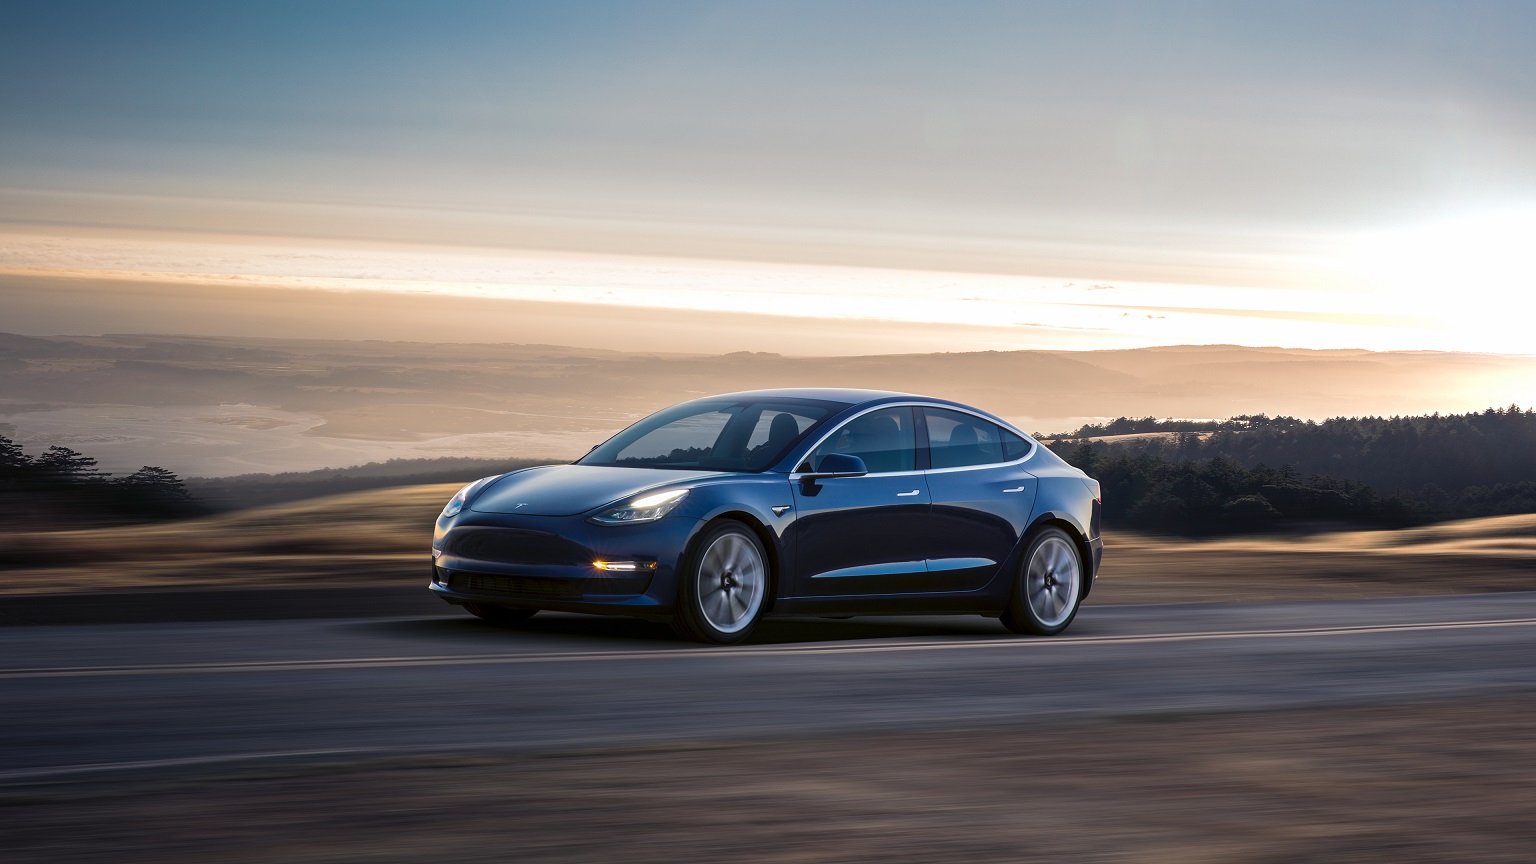 La Tesla Model 3 est la voiture électrique la plus vendue en 2018 - Numerama